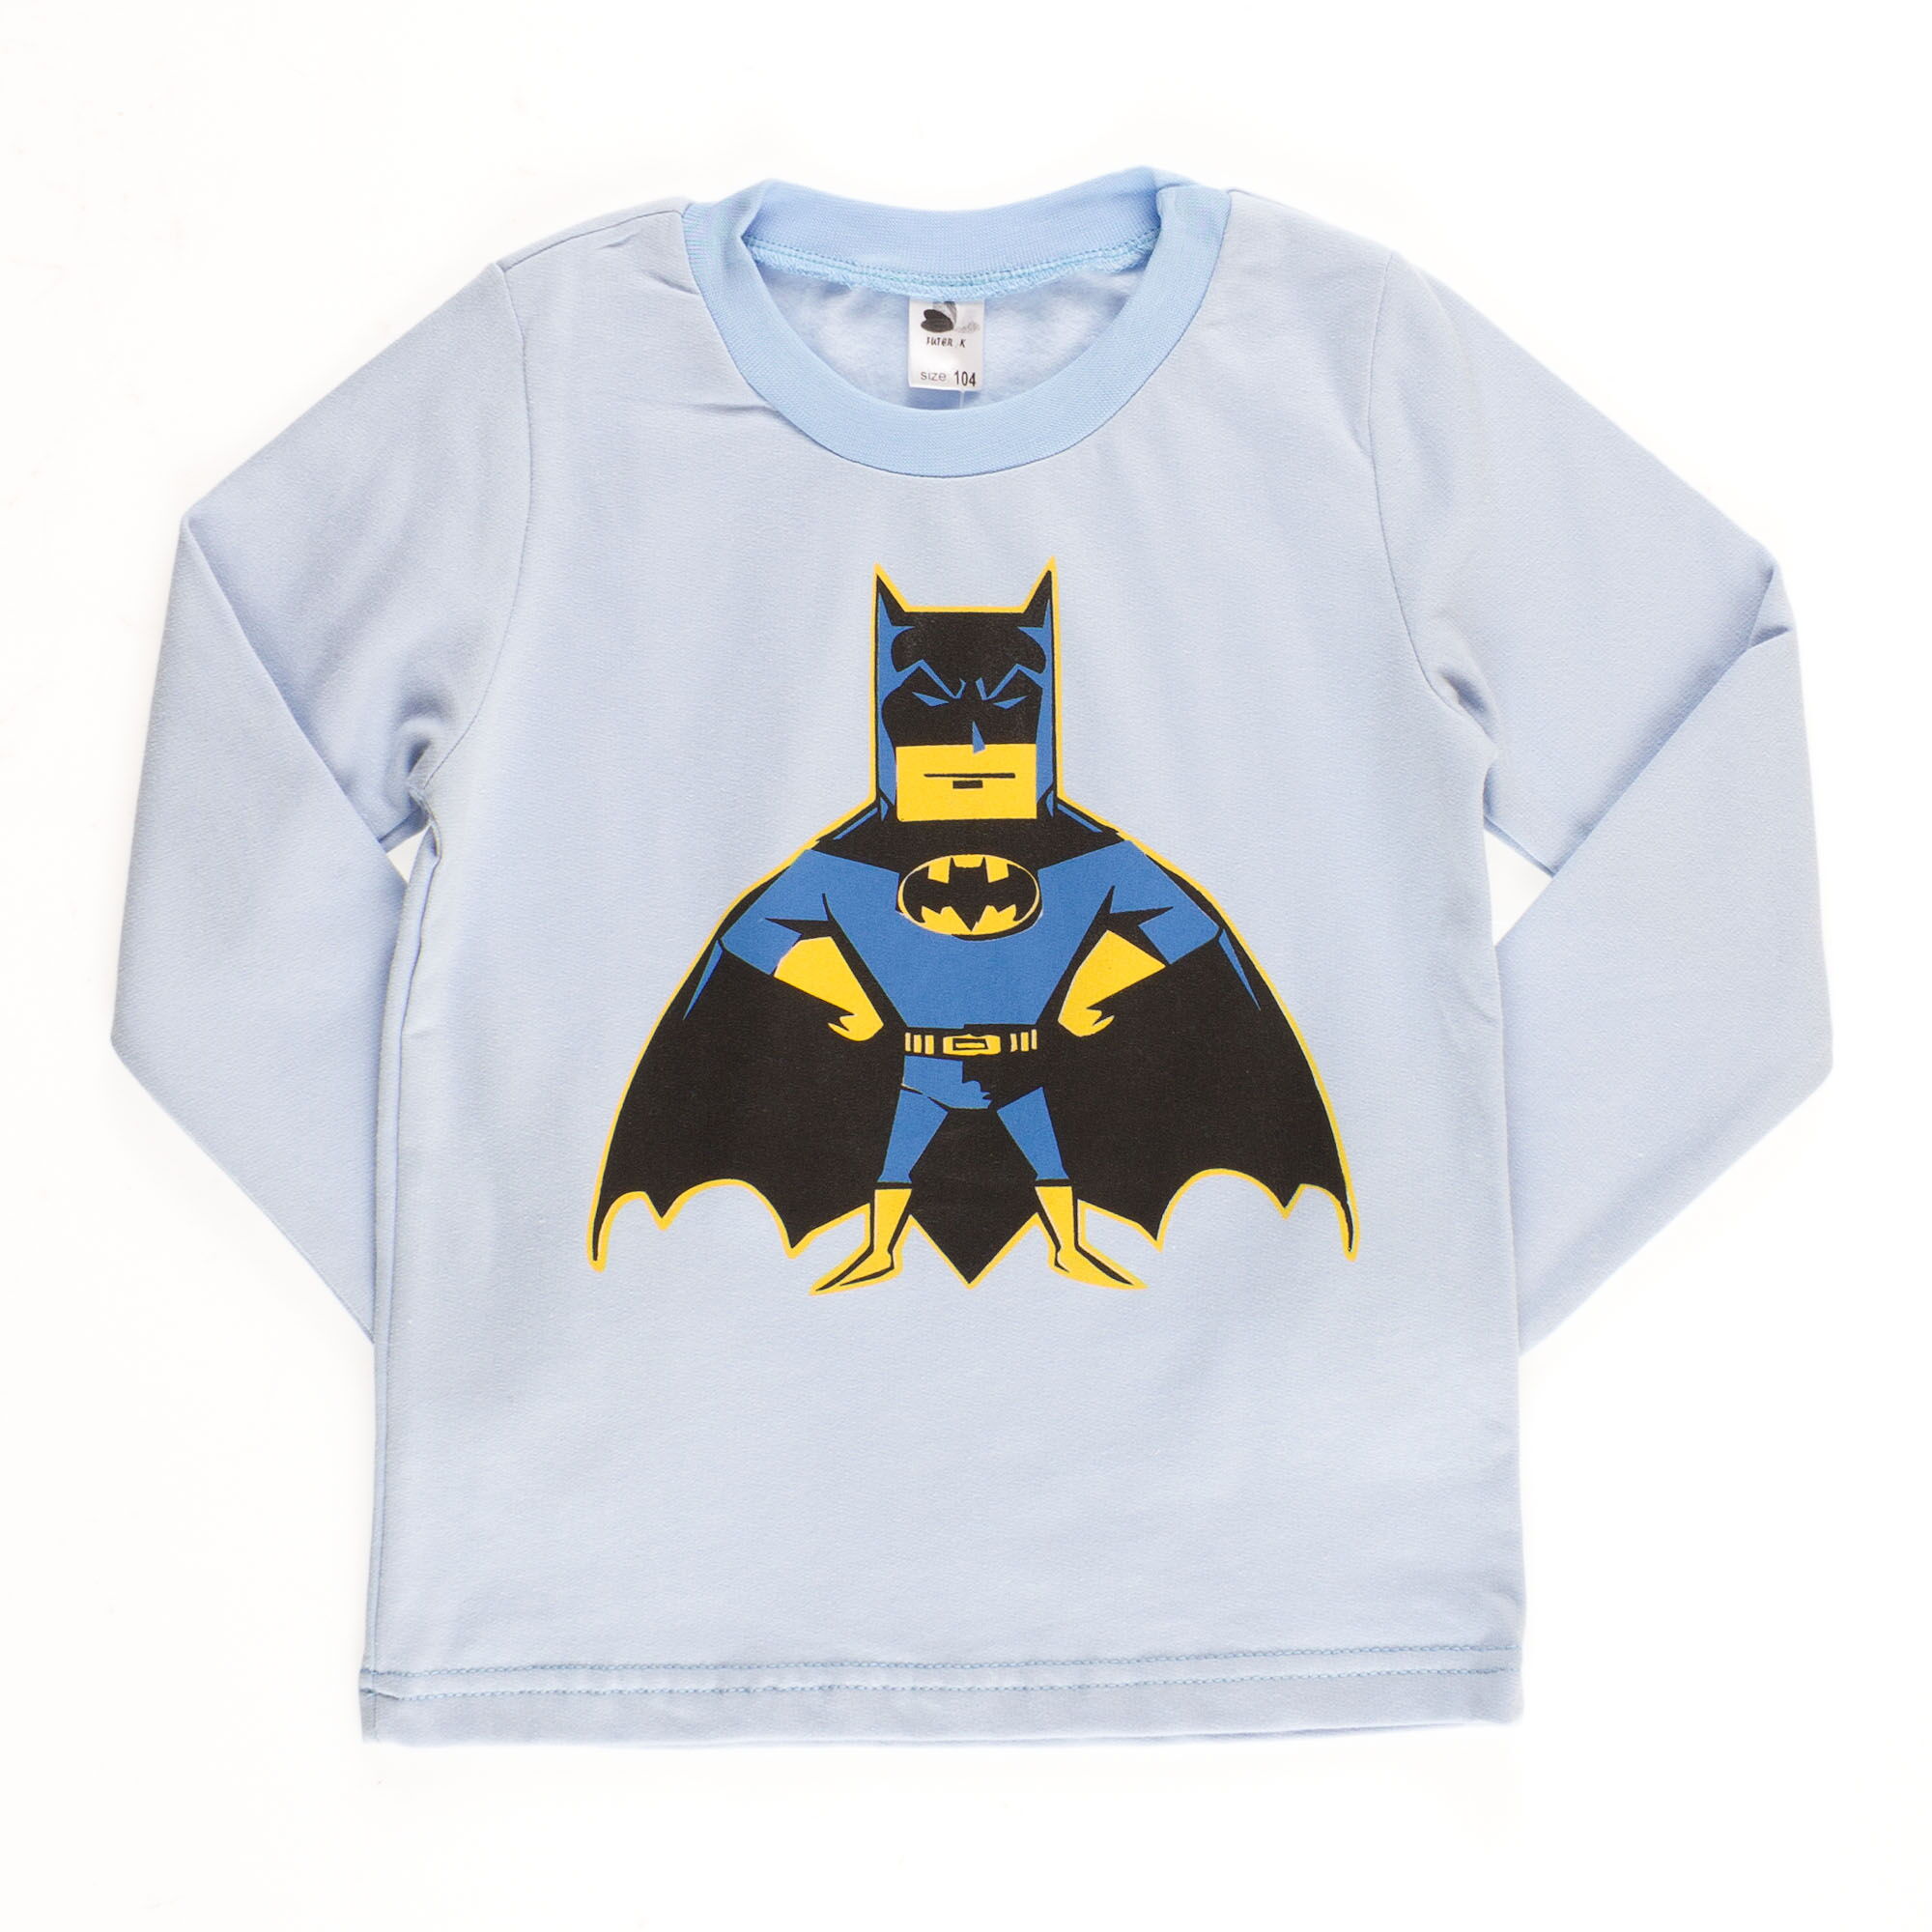 Пижама утепленная для мальчика Valeri tex Бетмен голубая 1626-55-155 - купить